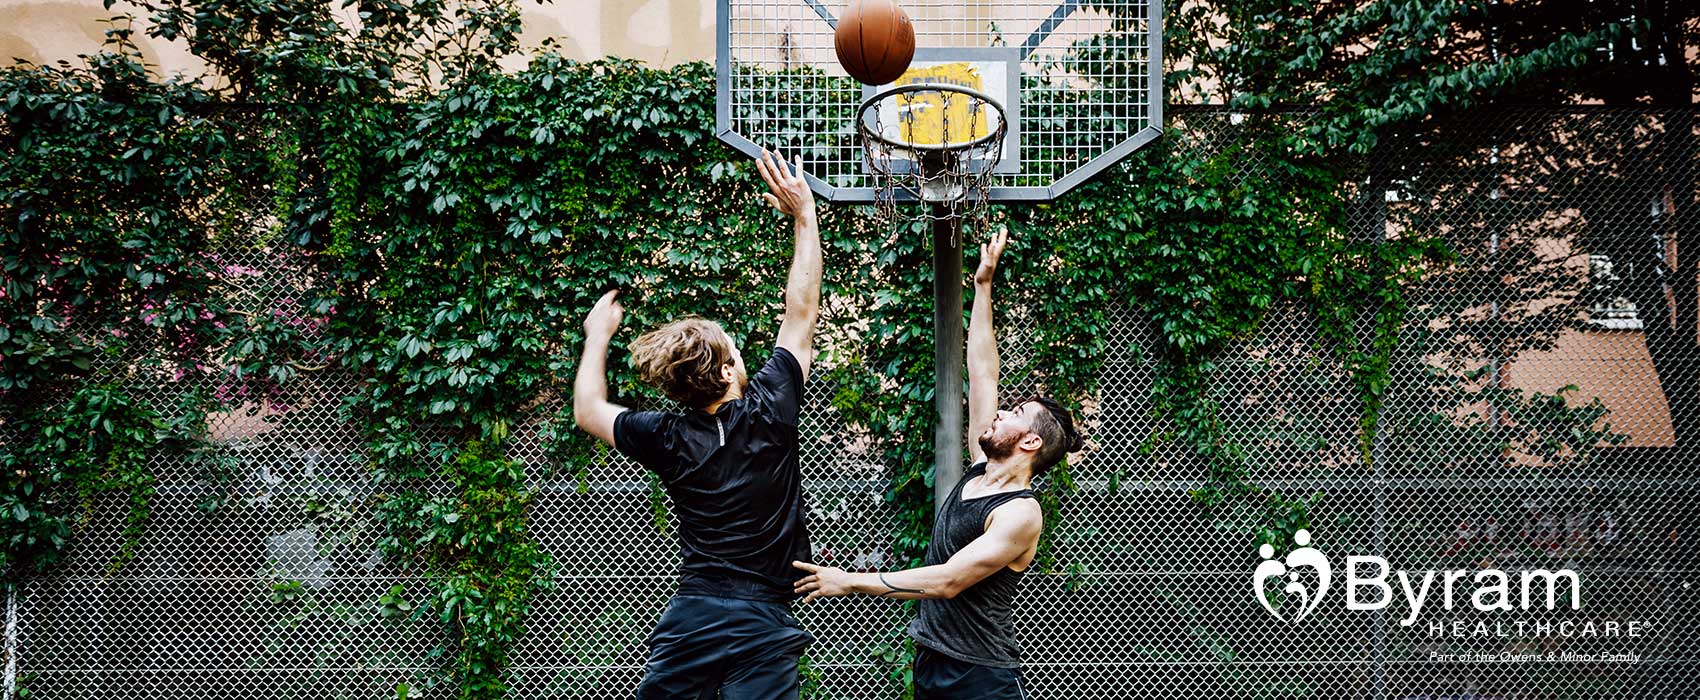 Two men playing basketball